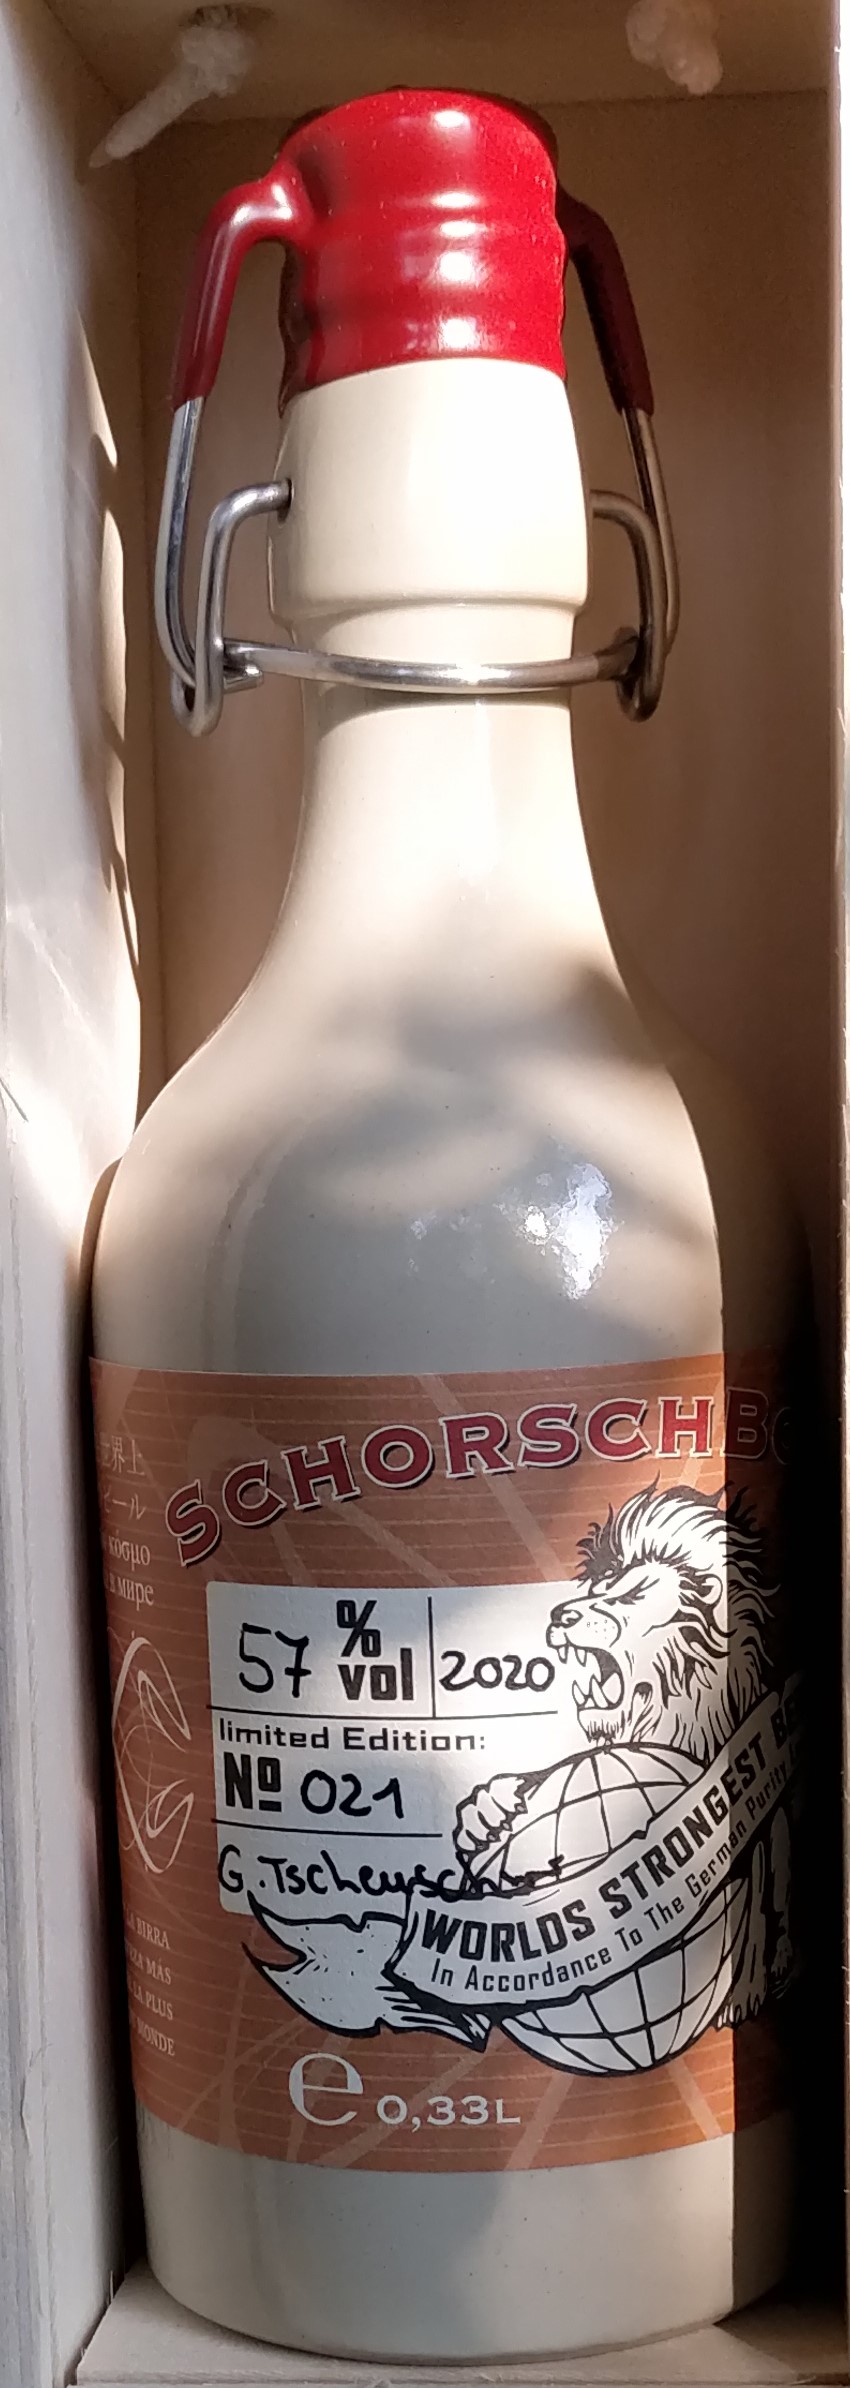 Schorschbock 57% world strongest beer